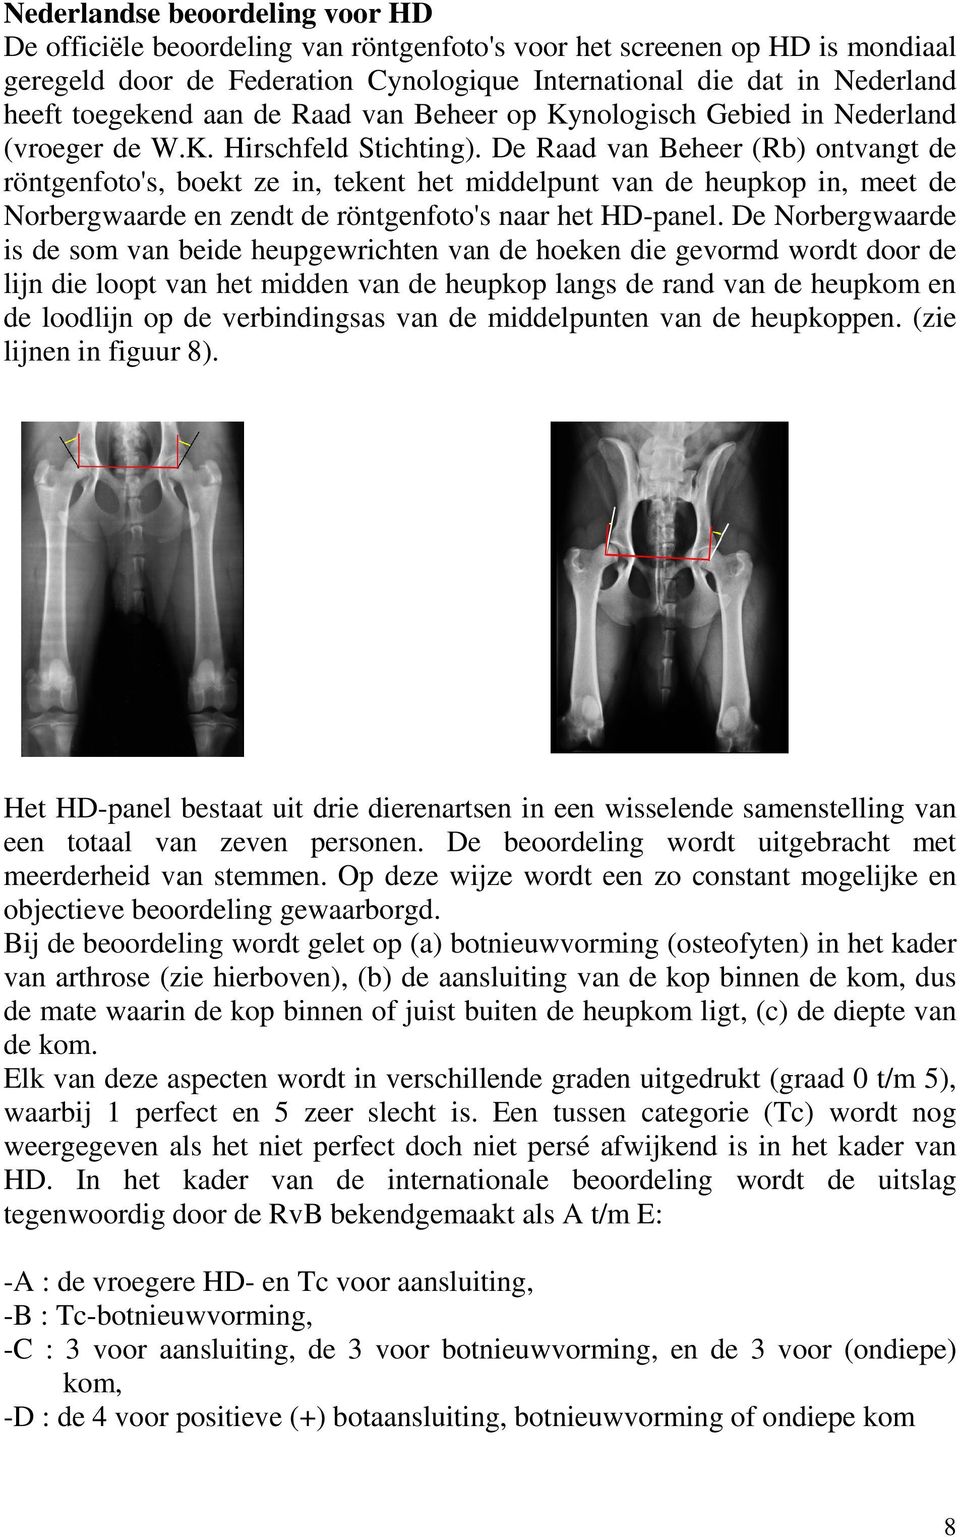 De Raad van Beheer (Rb) ontvangt de röntgenfoto's, boekt ze in, tekent het middelpunt van de heupkop in, meet de Norbergwaarde en zendt de röntgenfoto's naar het HD-panel.